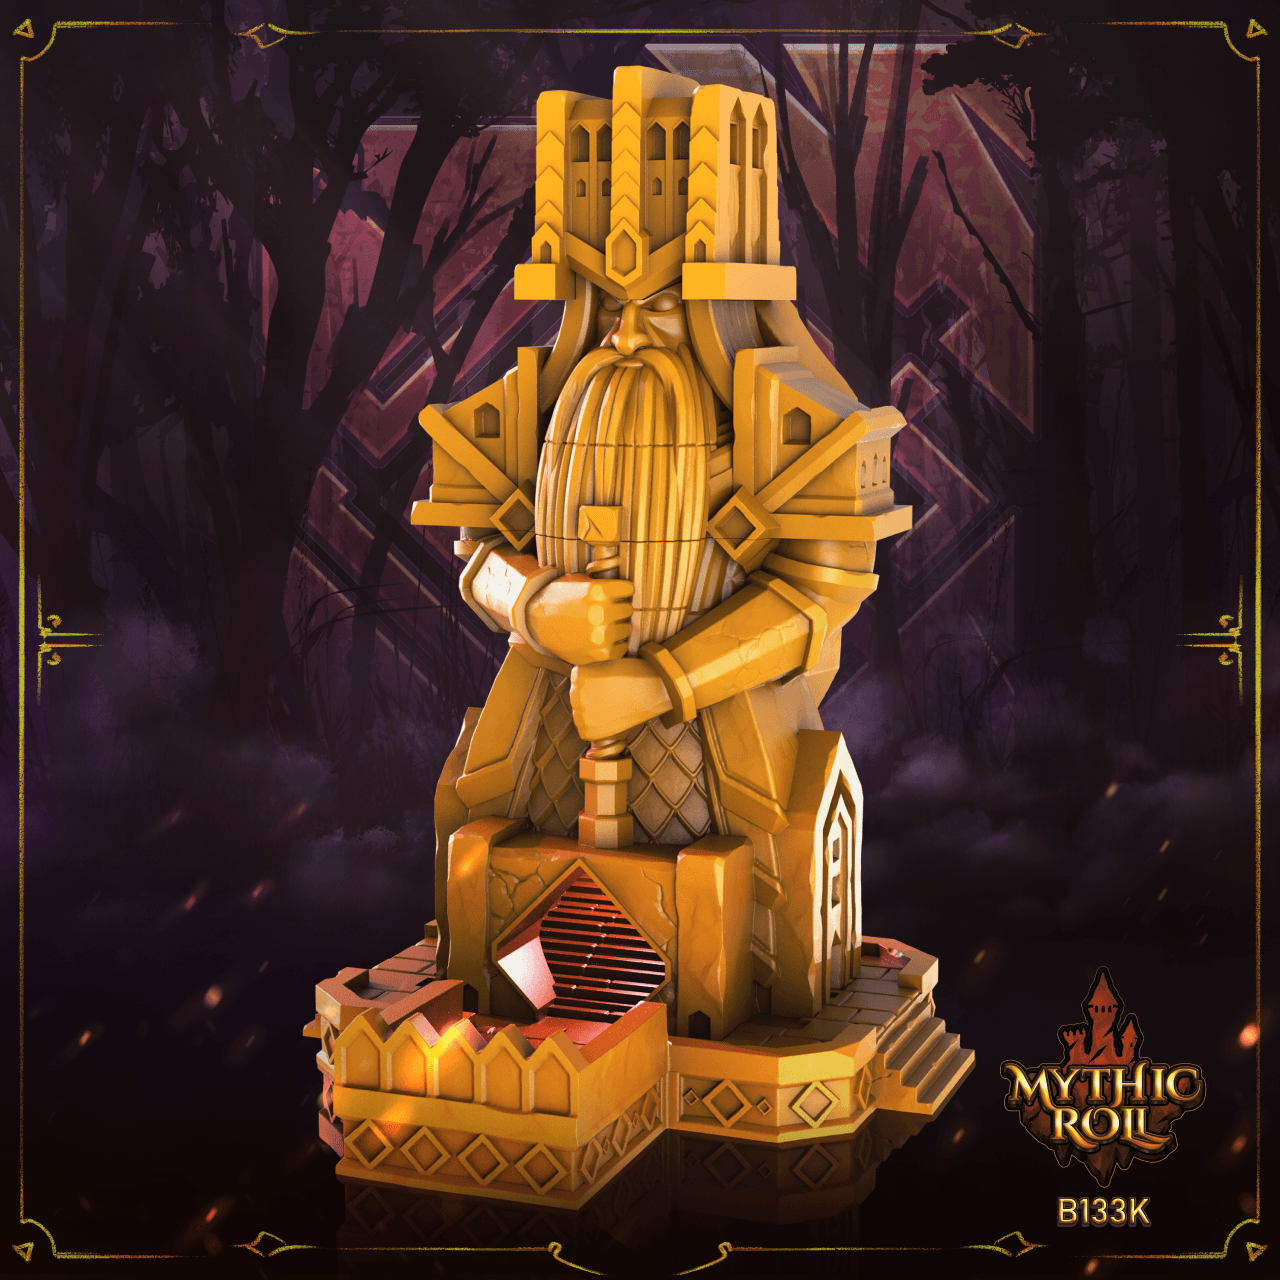 Baldur's Shrine Dice Tower by Mythic Roll